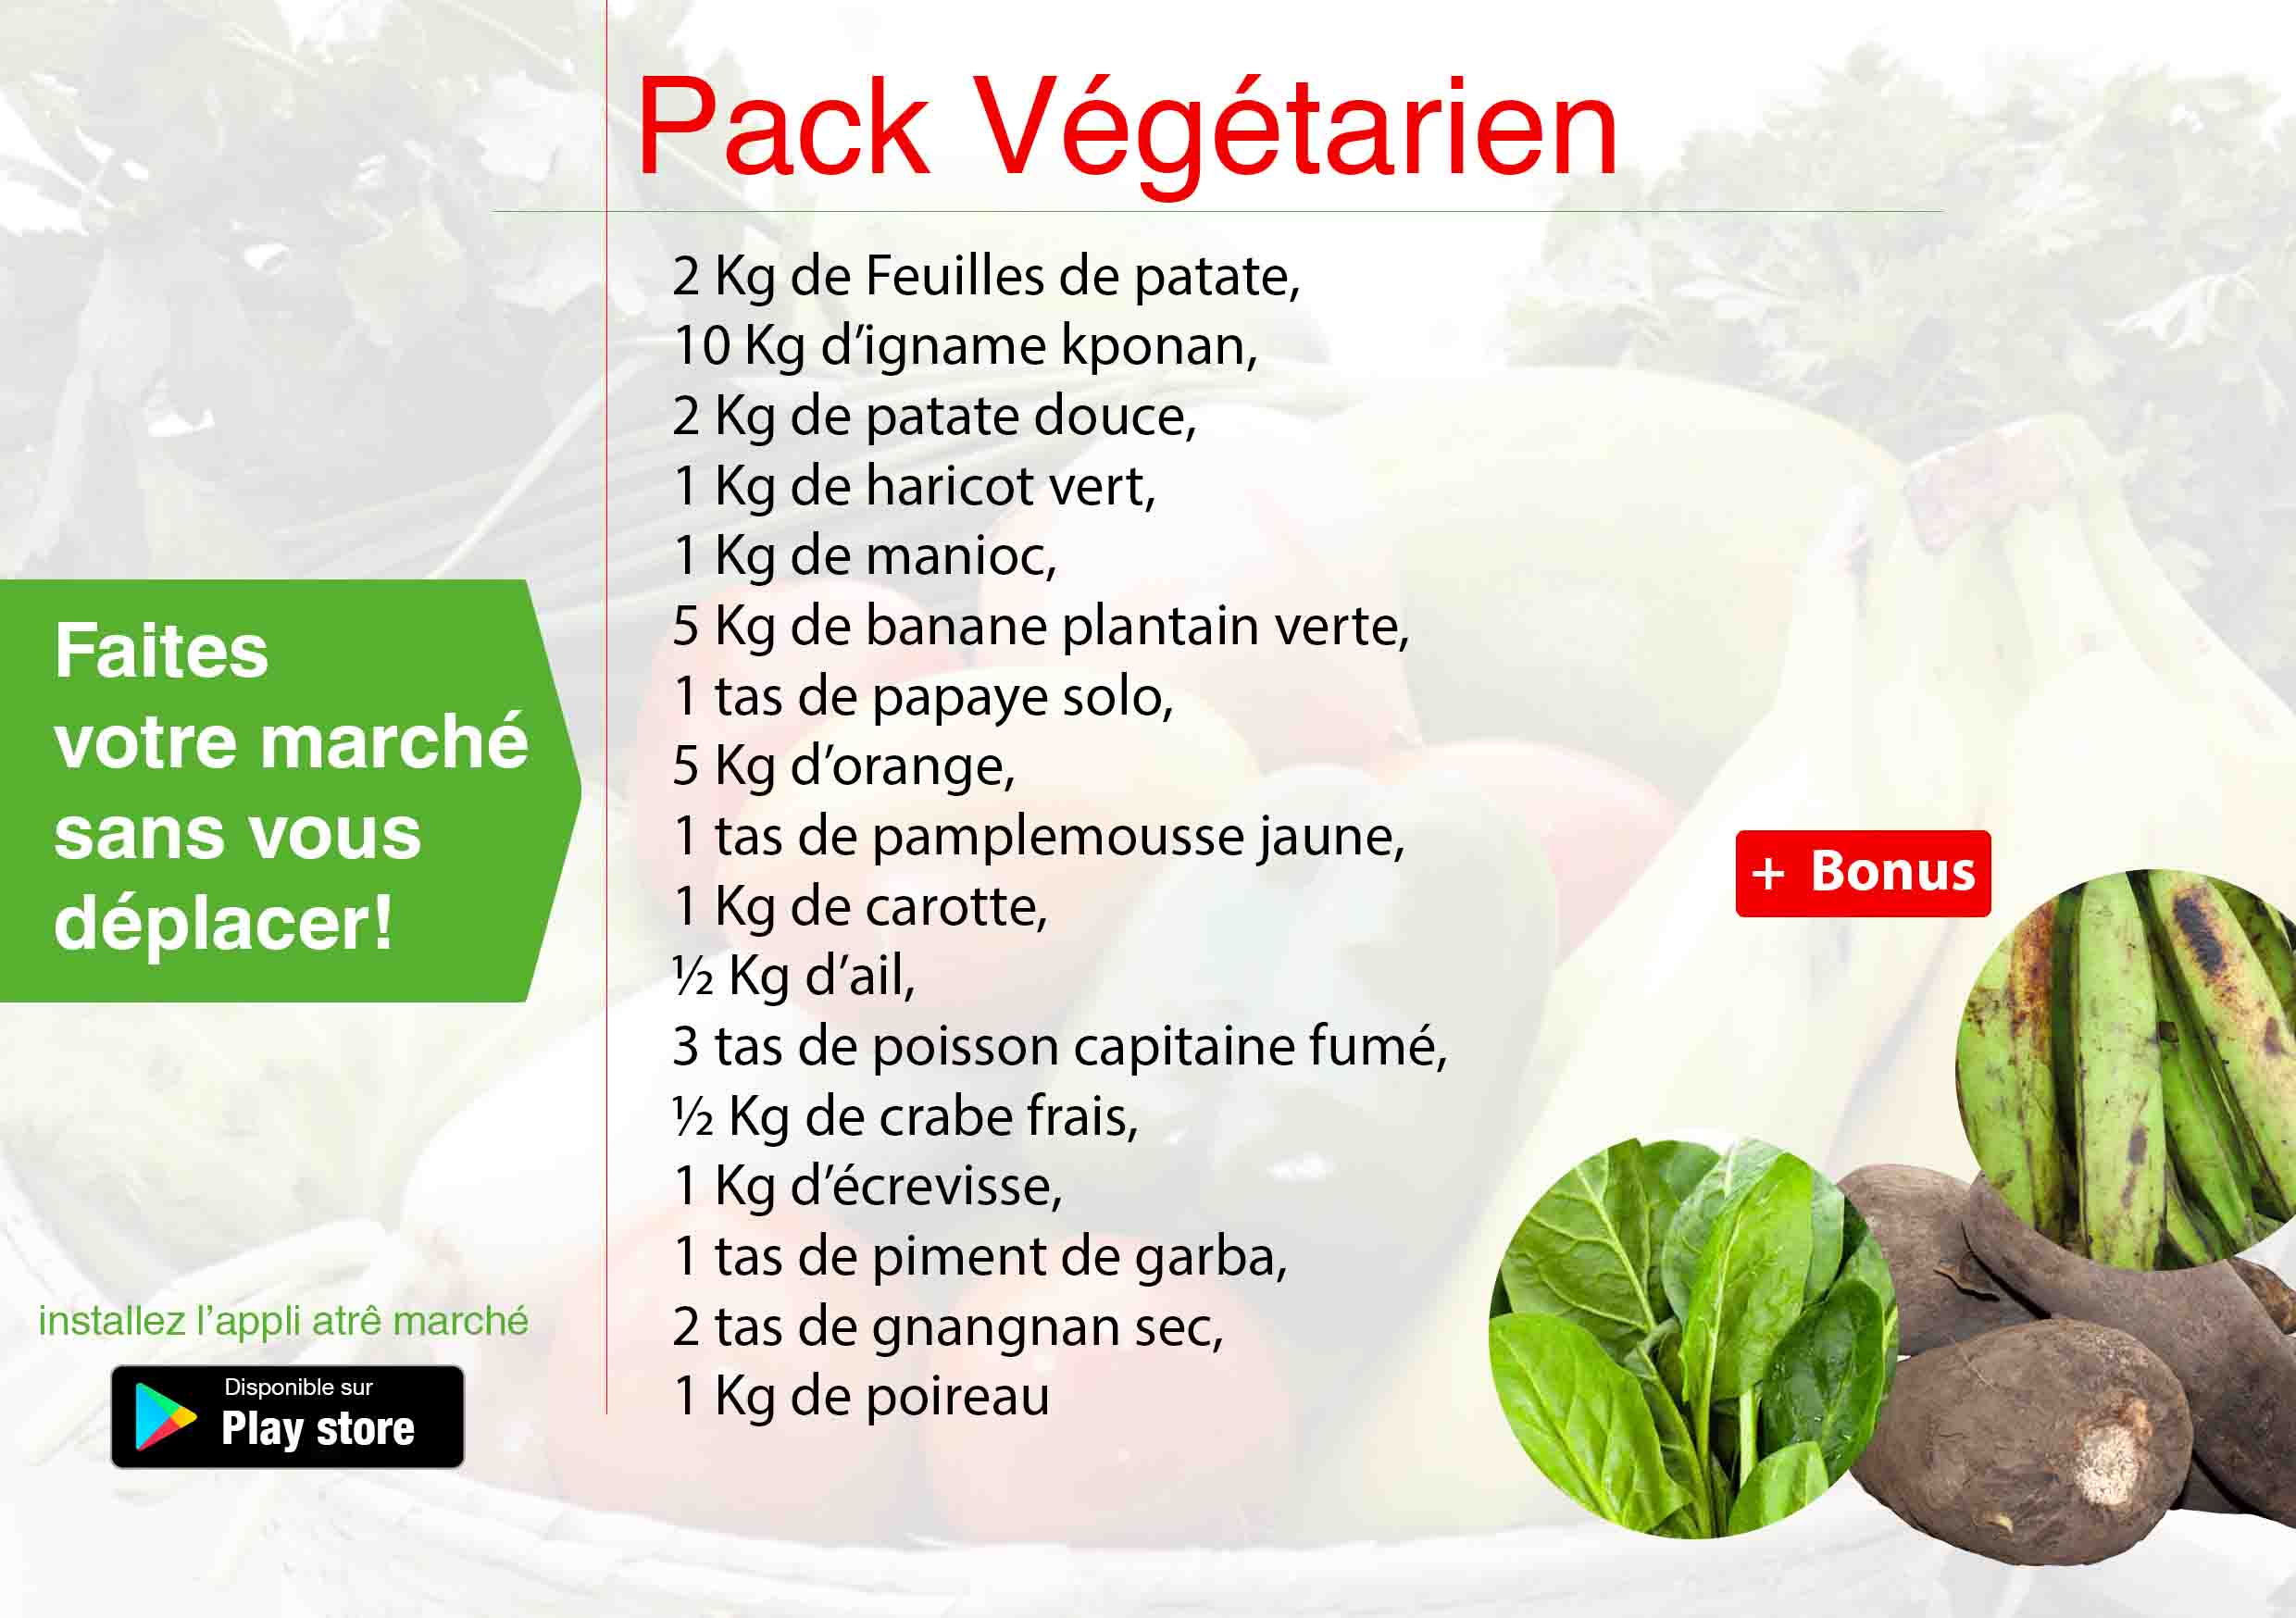 Pack végétarien